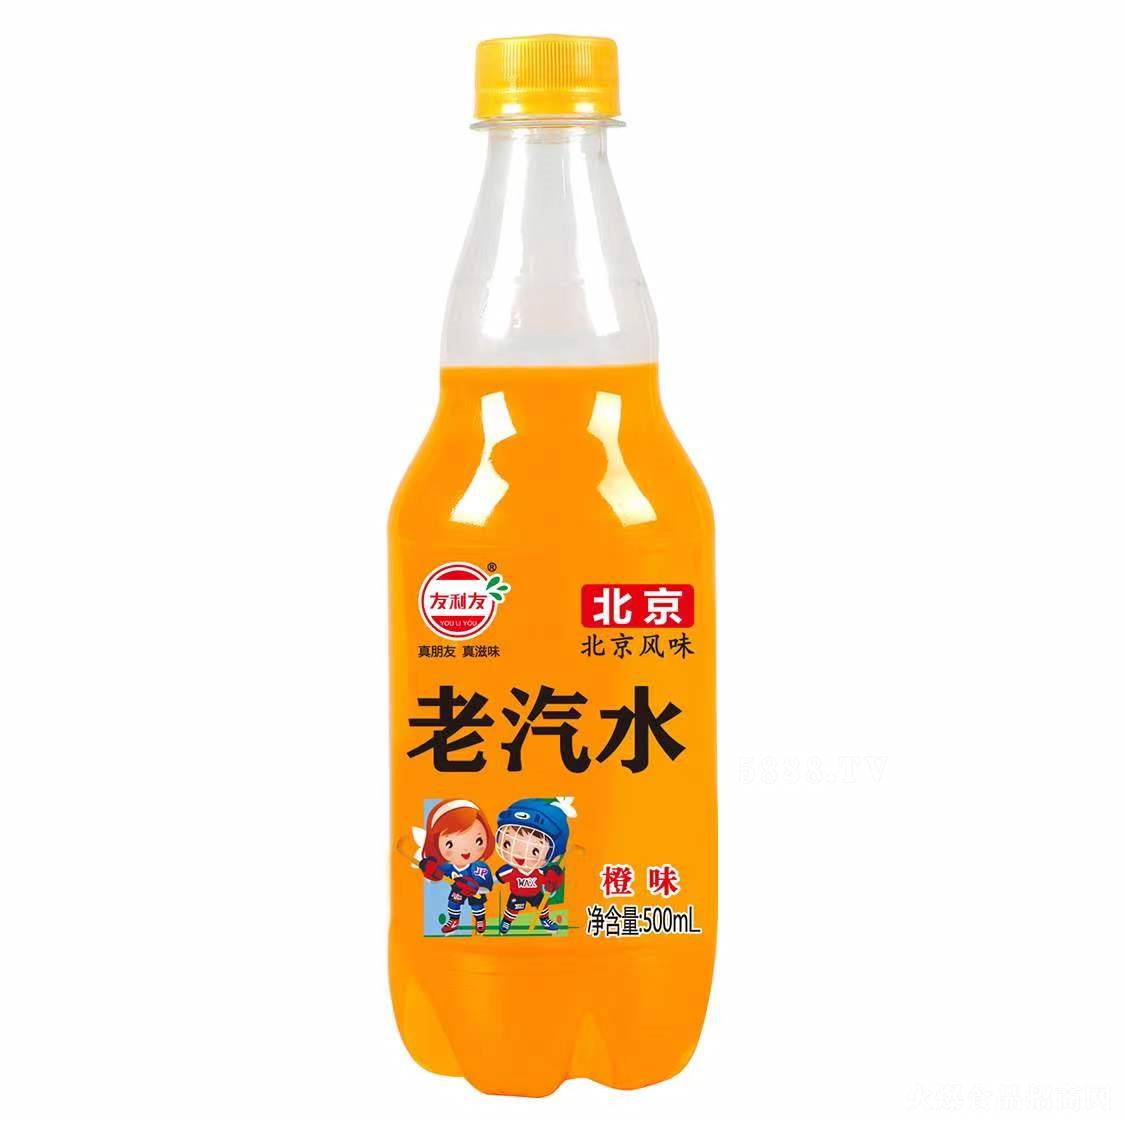 友利友北京老汽水橙味碳酸饮料500ml